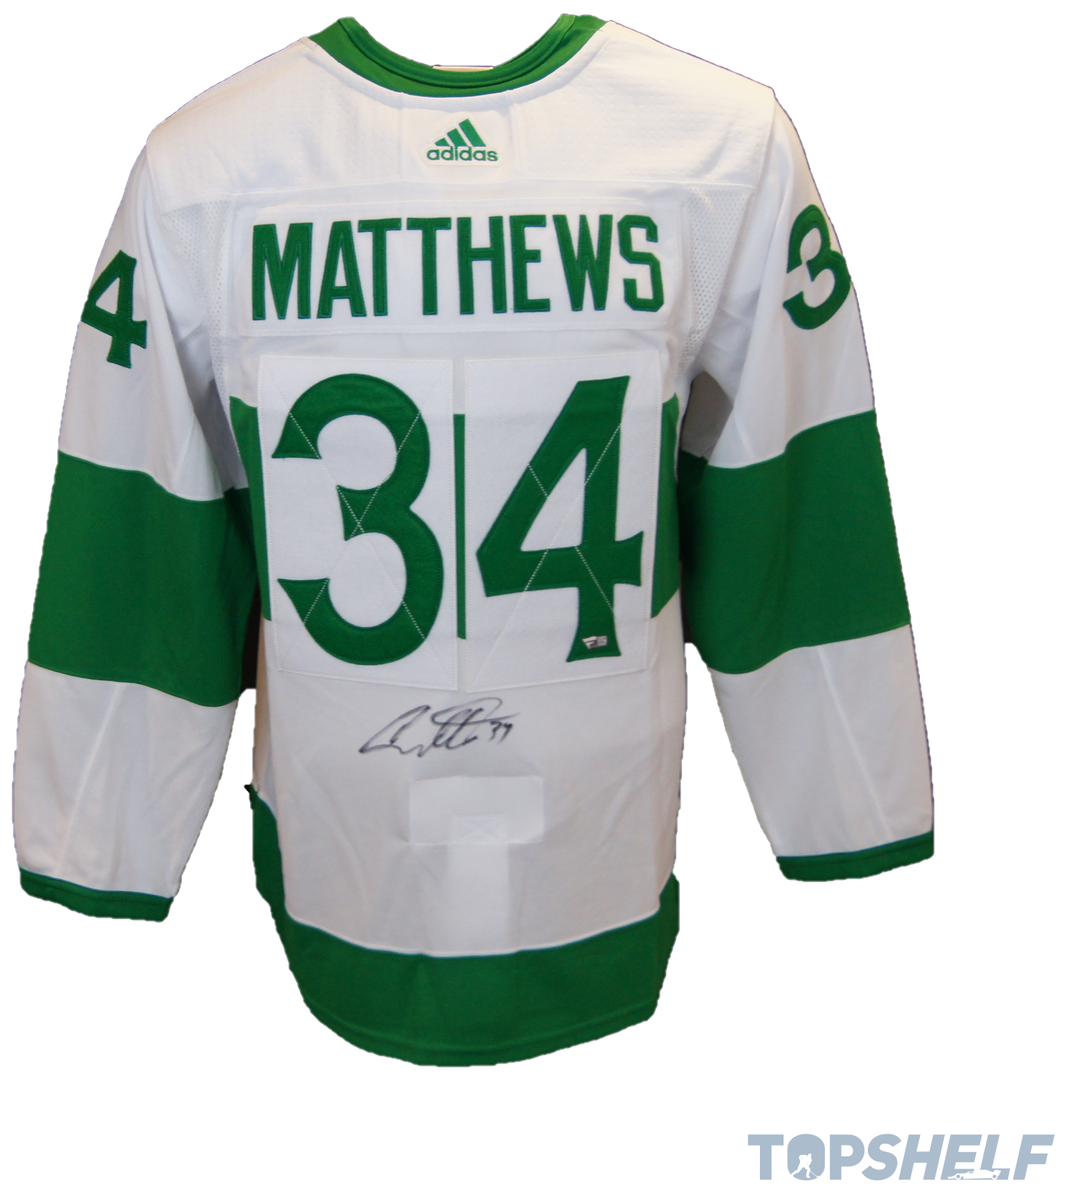 Auston Matthews in St. Patrick's jersey